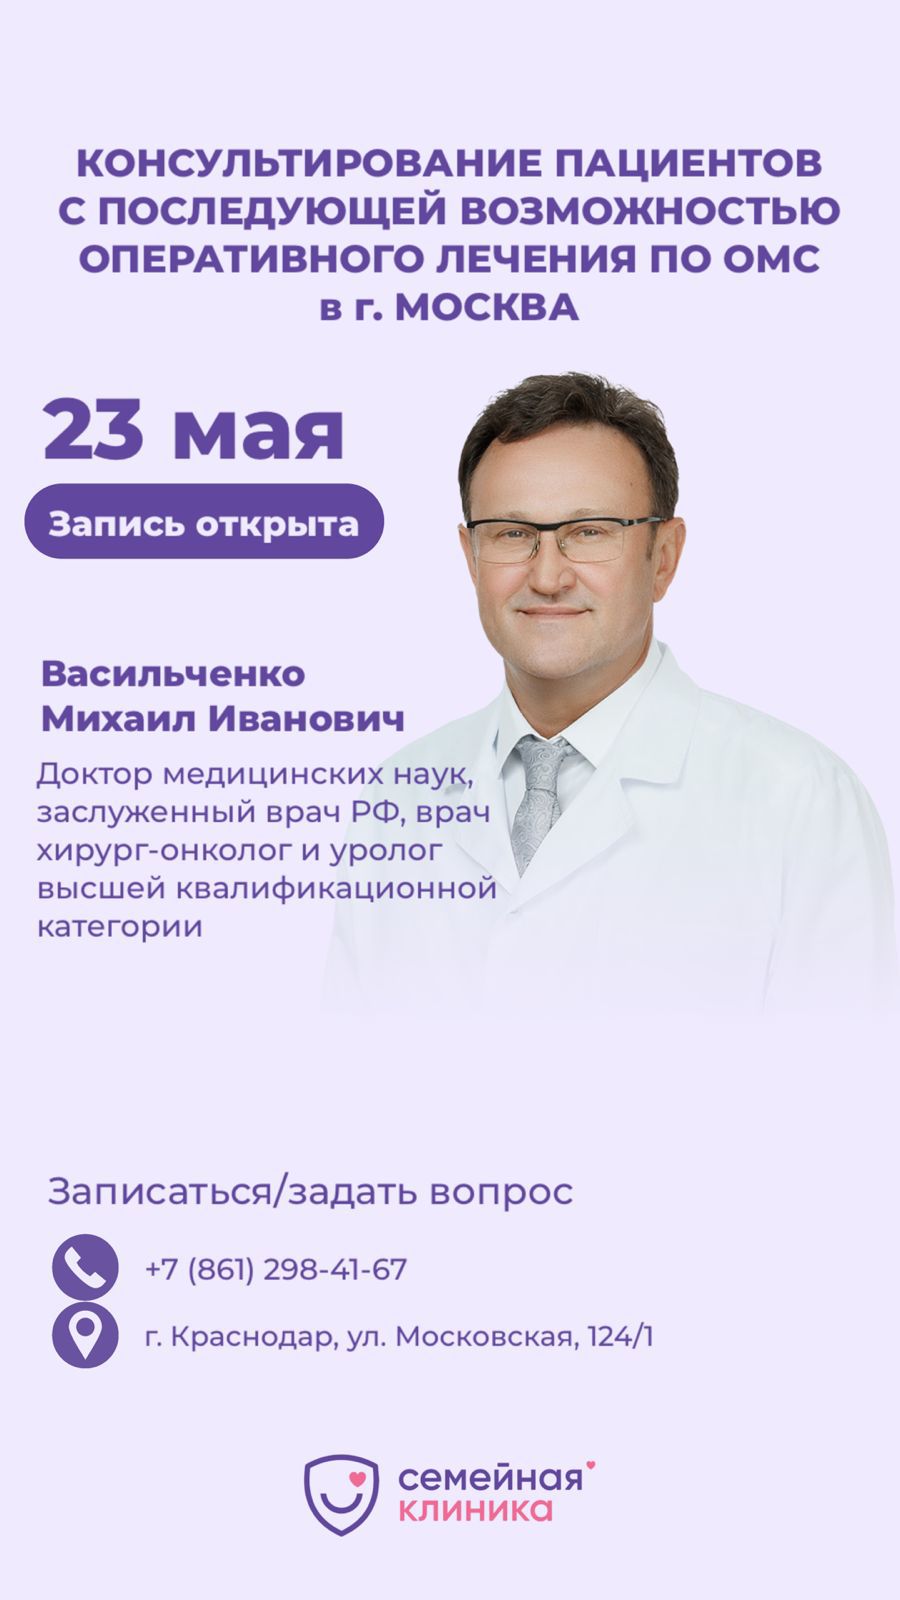 Консультирование пациентов с последующей возможностью оперативного лечения по ОМС в г. Москва